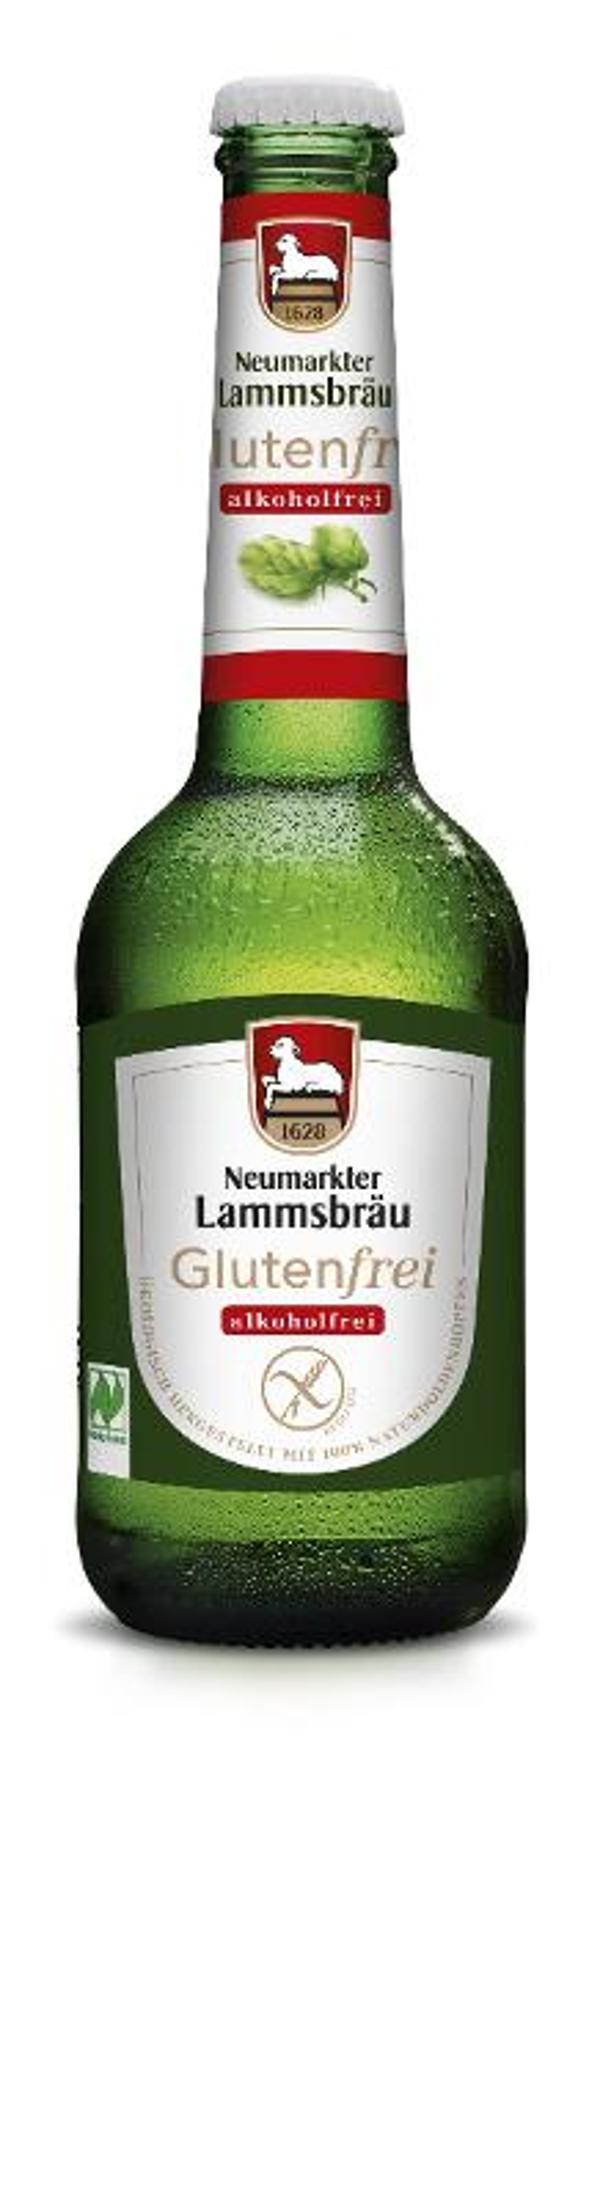 Produktfoto zu VPE Lammsbräu Glutenfrei & alkoholfrei 10x0,33 l Neumarkter Lammsbräu